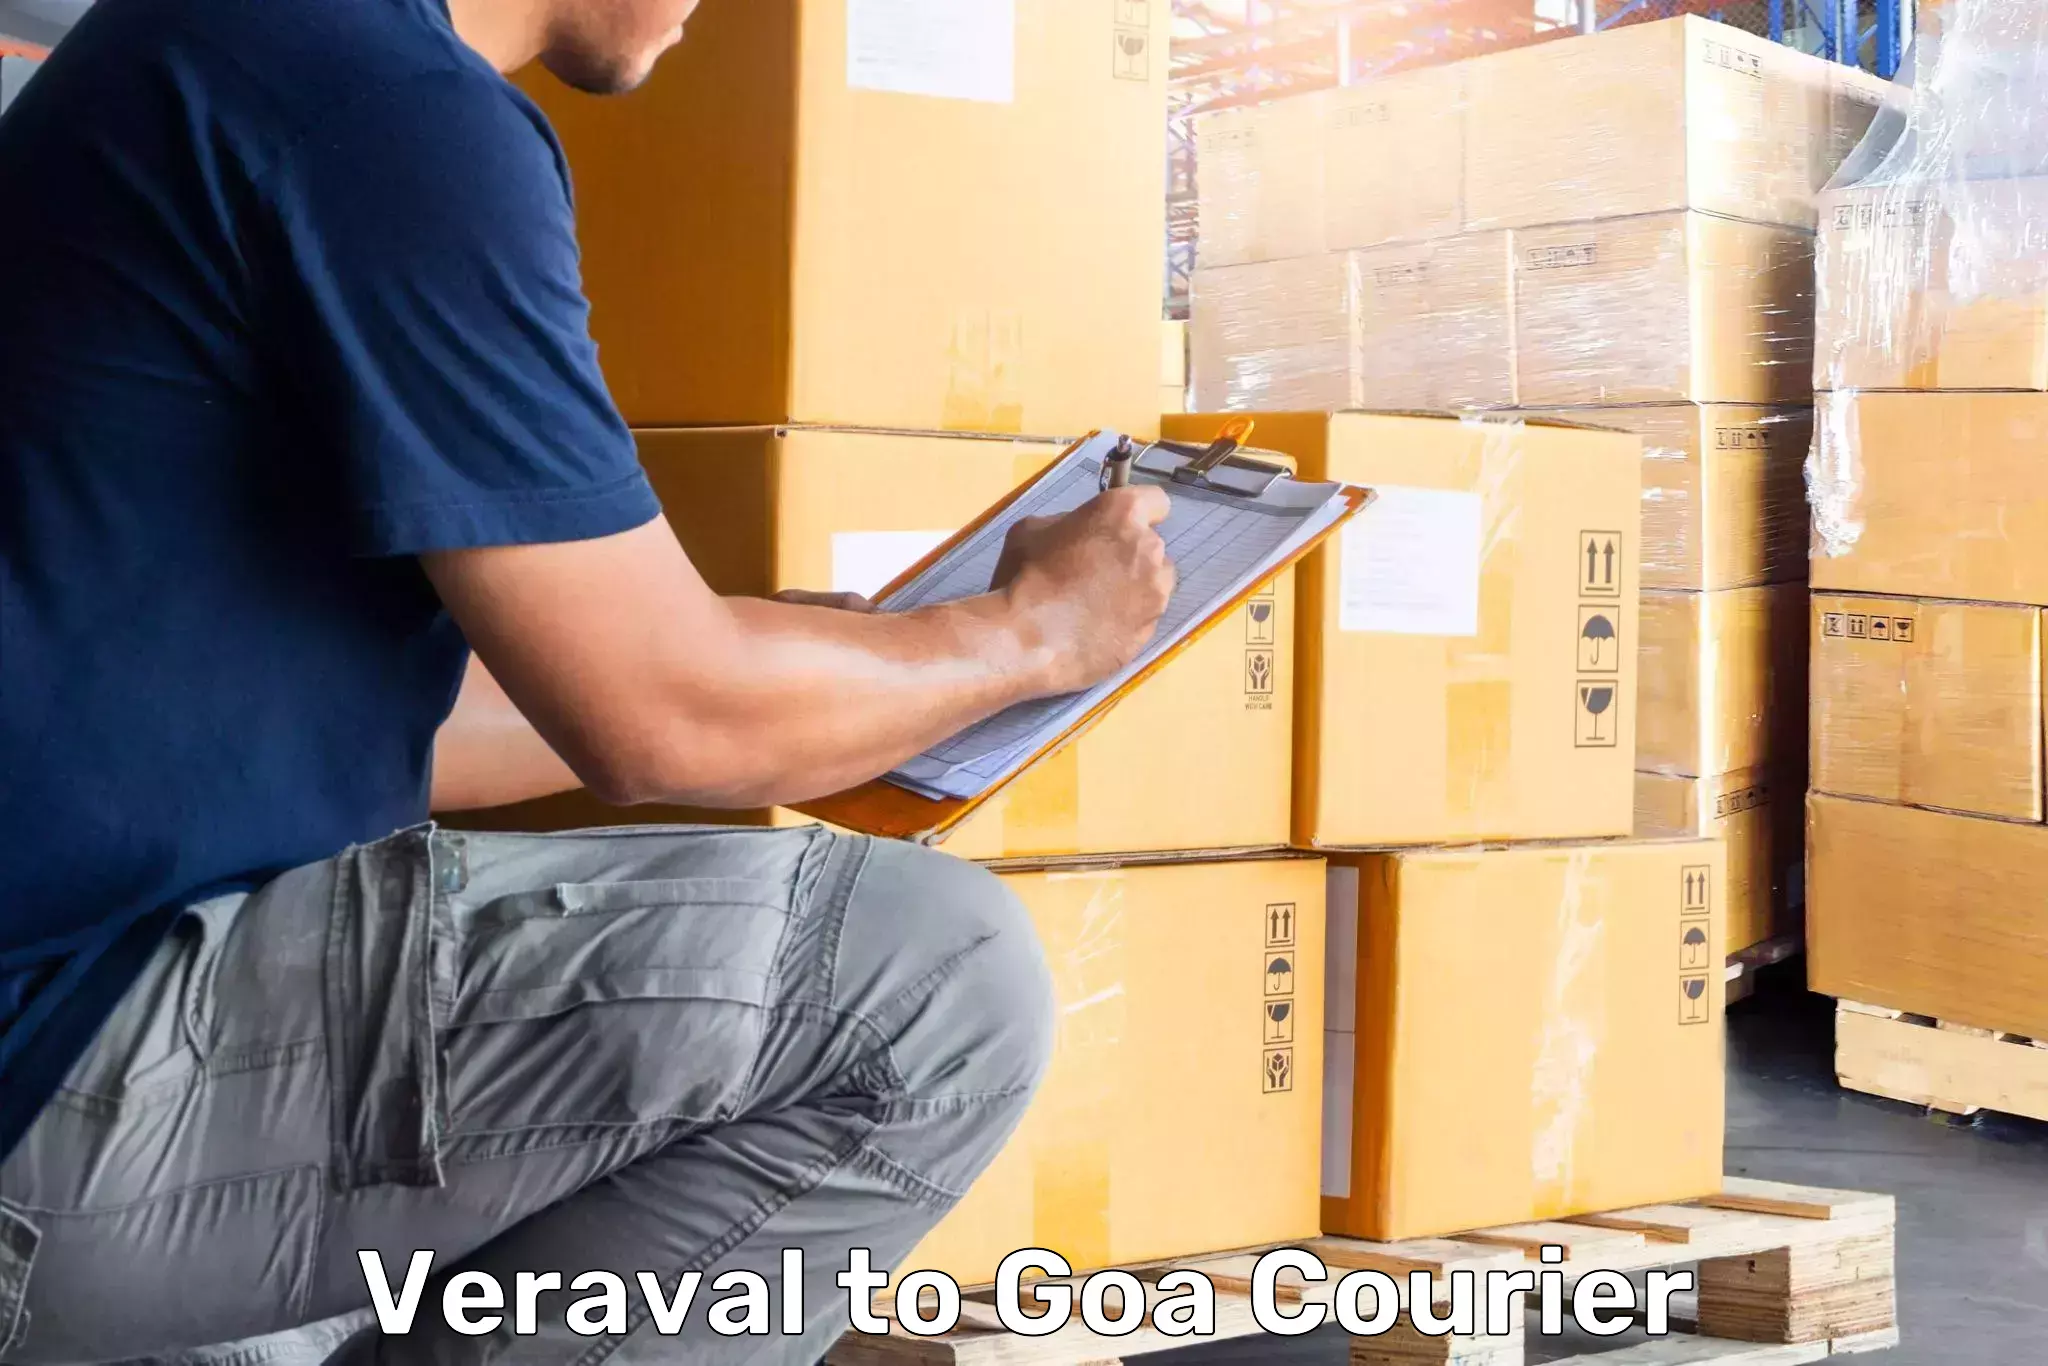 Luggage shipment tracking Veraval to Ponda